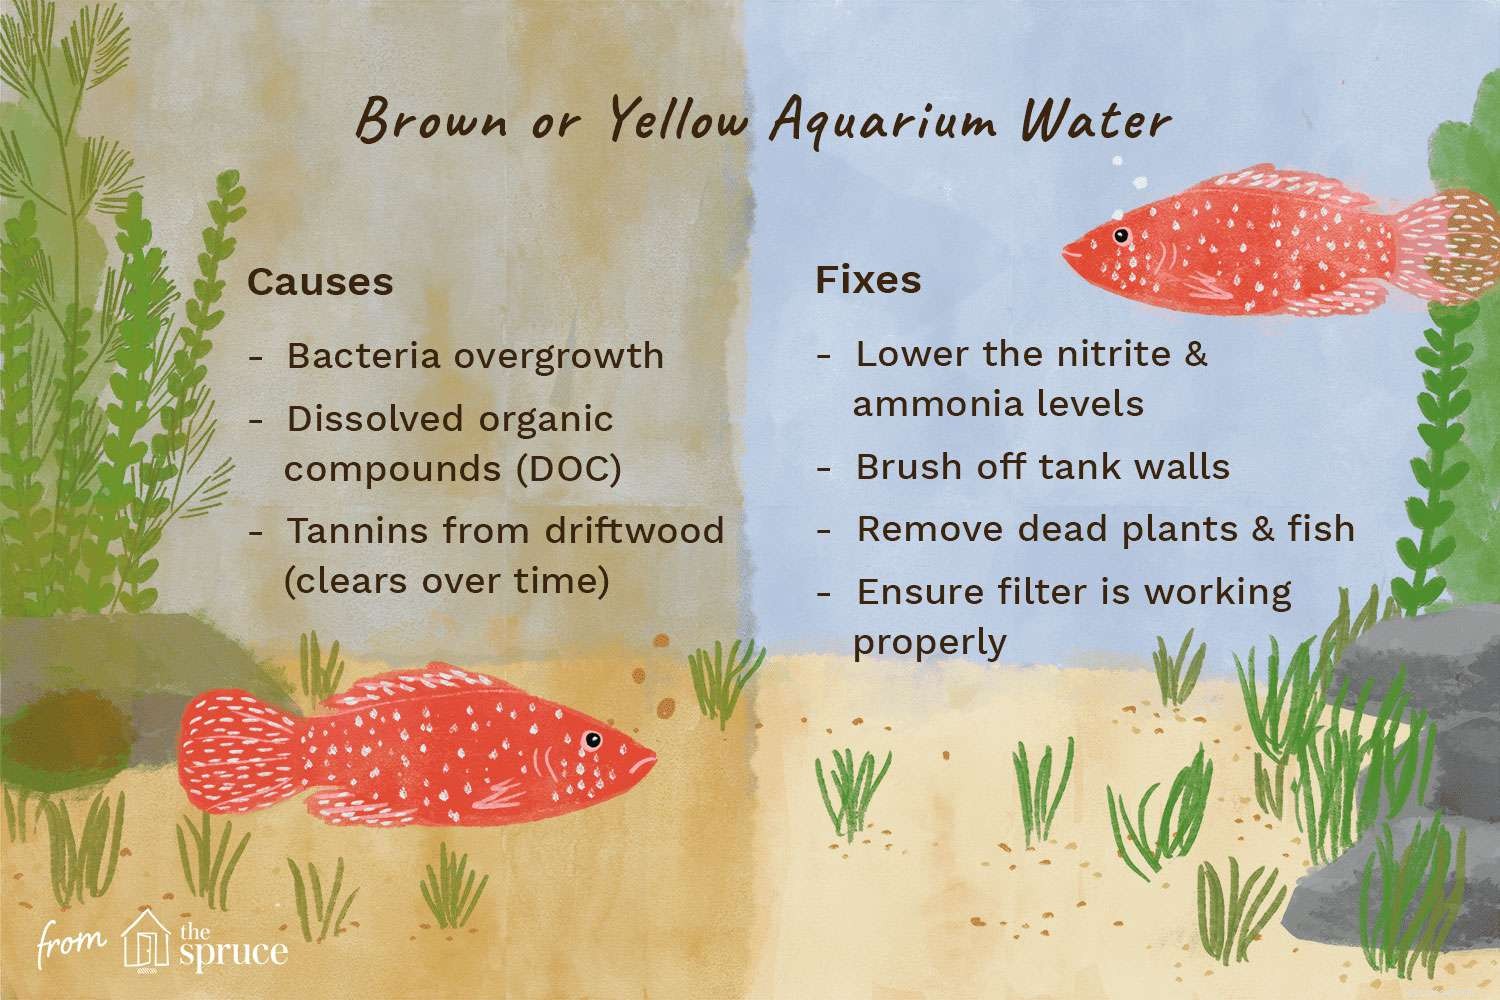 Oorzaken en oplossingen voor geel of bruin aquariumwater